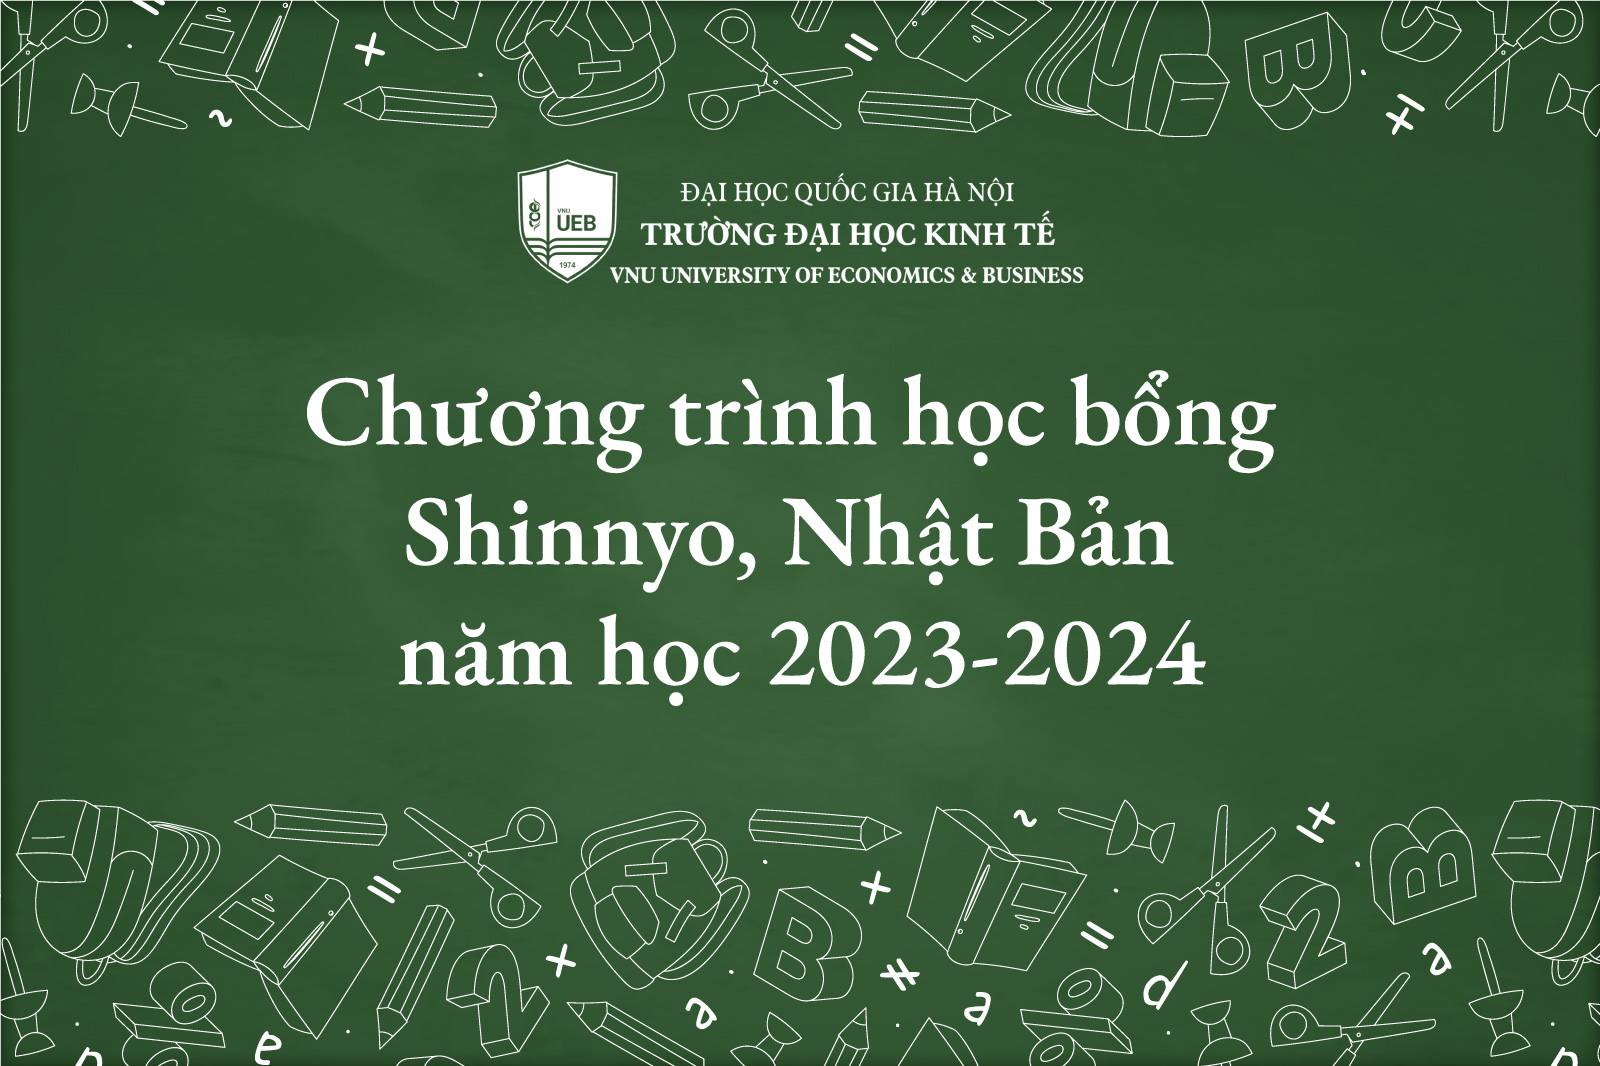 Chương trình học bổng Shinnyo, Nhật Bản năm học 2023-2024